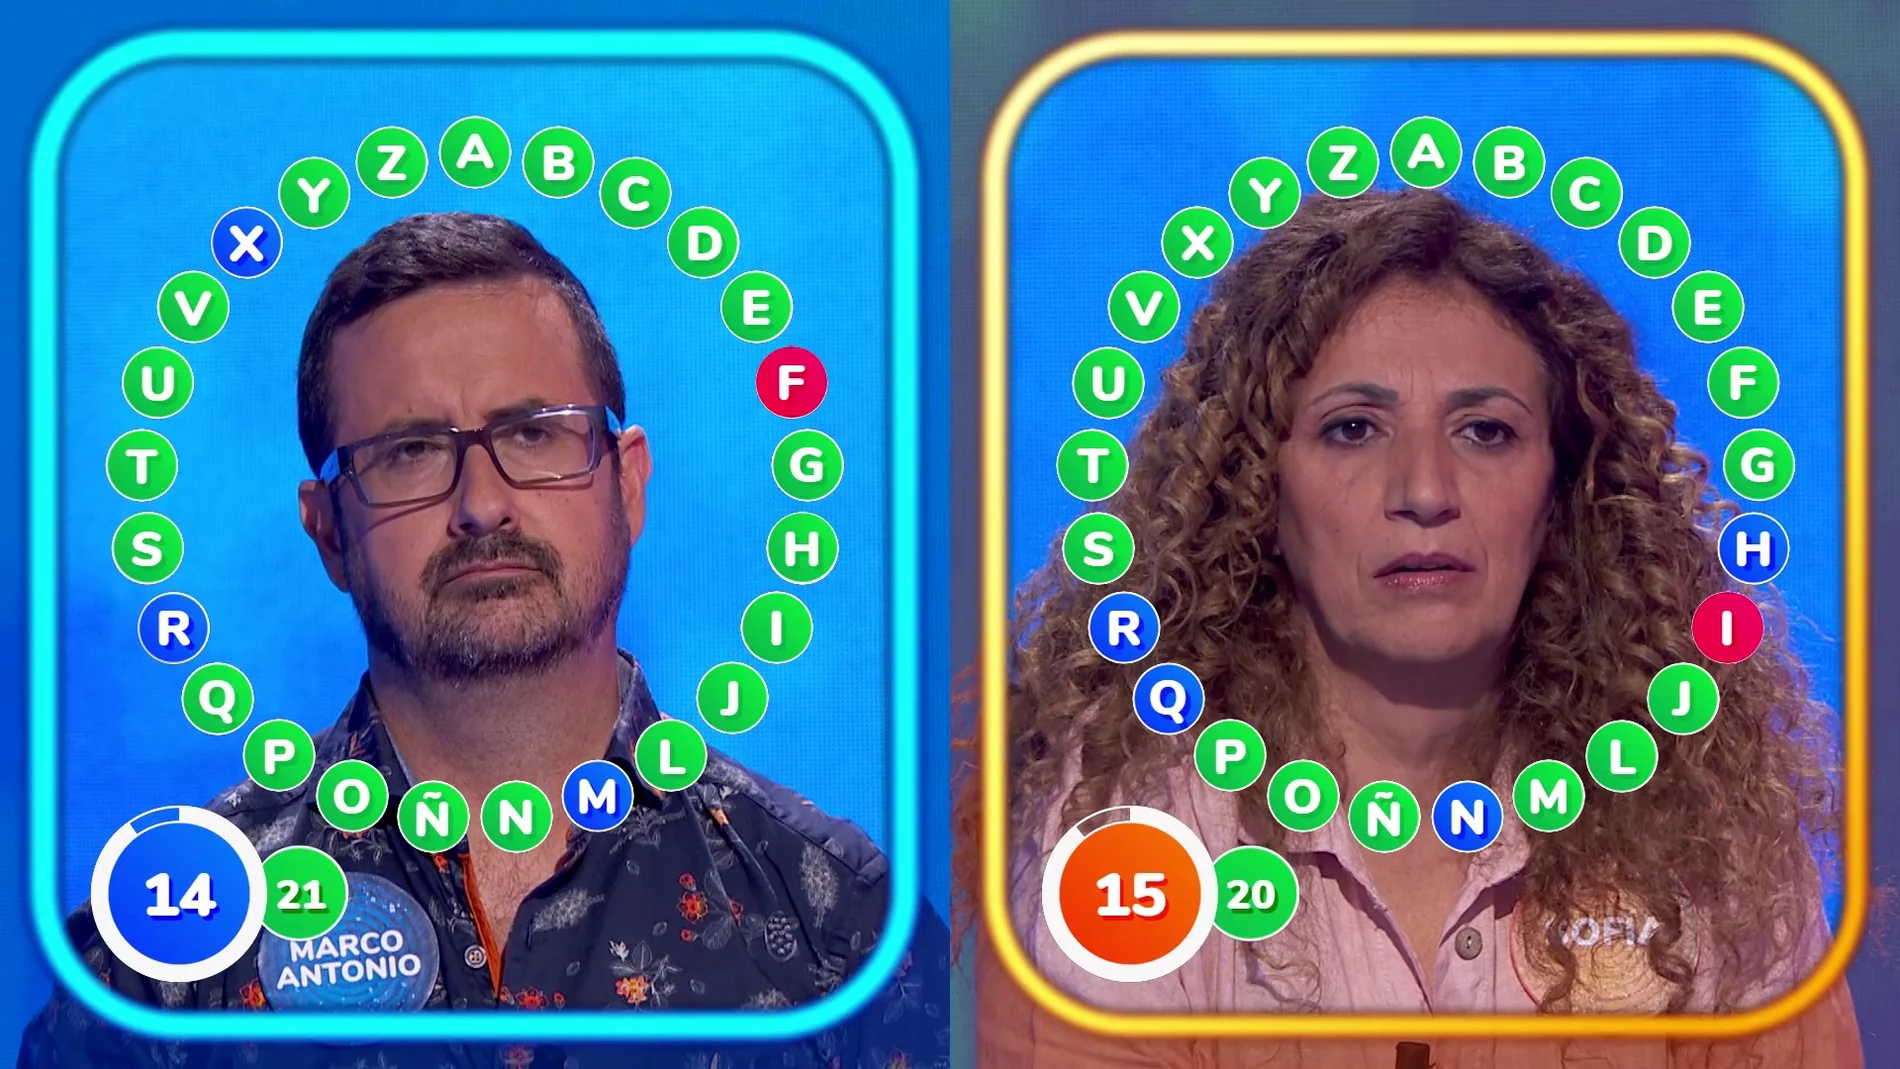 Dos rápidos fallos protagonizan un intenso e igualado duelo entre Marco Antonio y Sofía: ¿Quién ganará ‘El Rosco’?